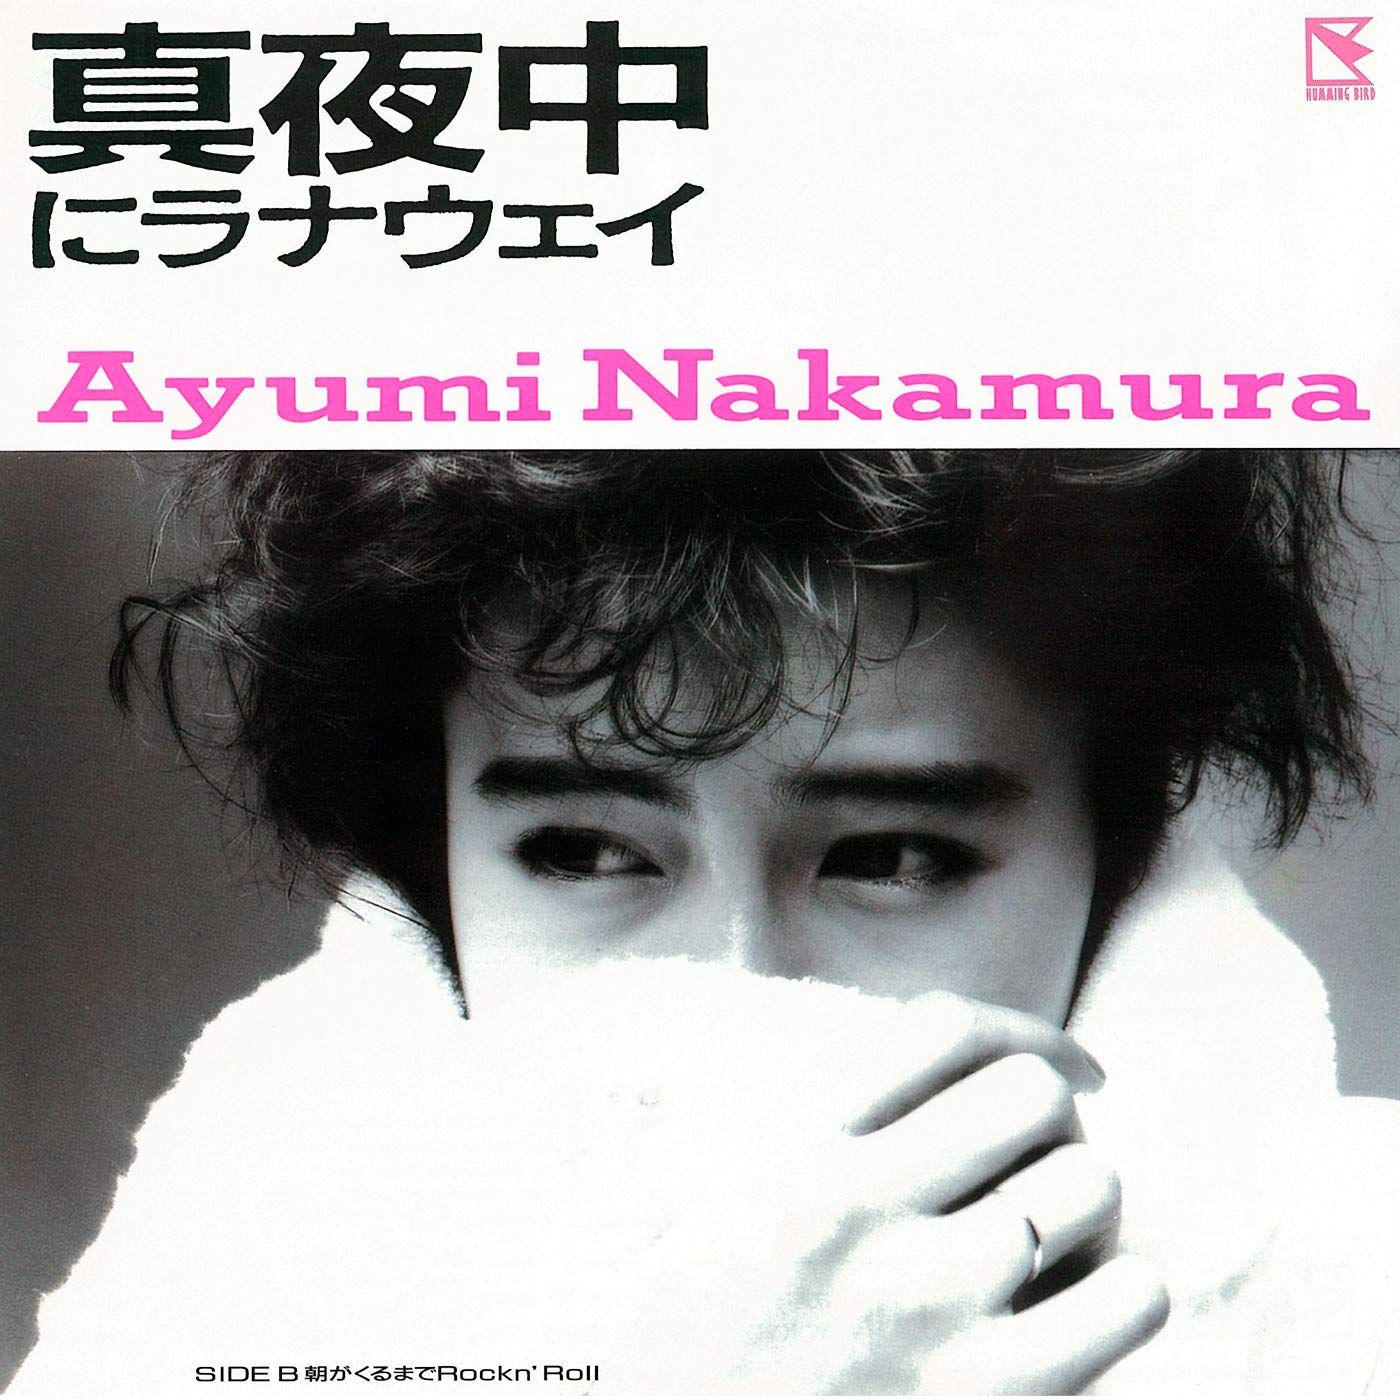 Ayumi Nakamura (中村あゆみ) – 真夜中にラナウェイ/ 朝が来るまでRock’n Roll (2019 Remastered) (1986/2019) [FLAC 24bit/48kHz]